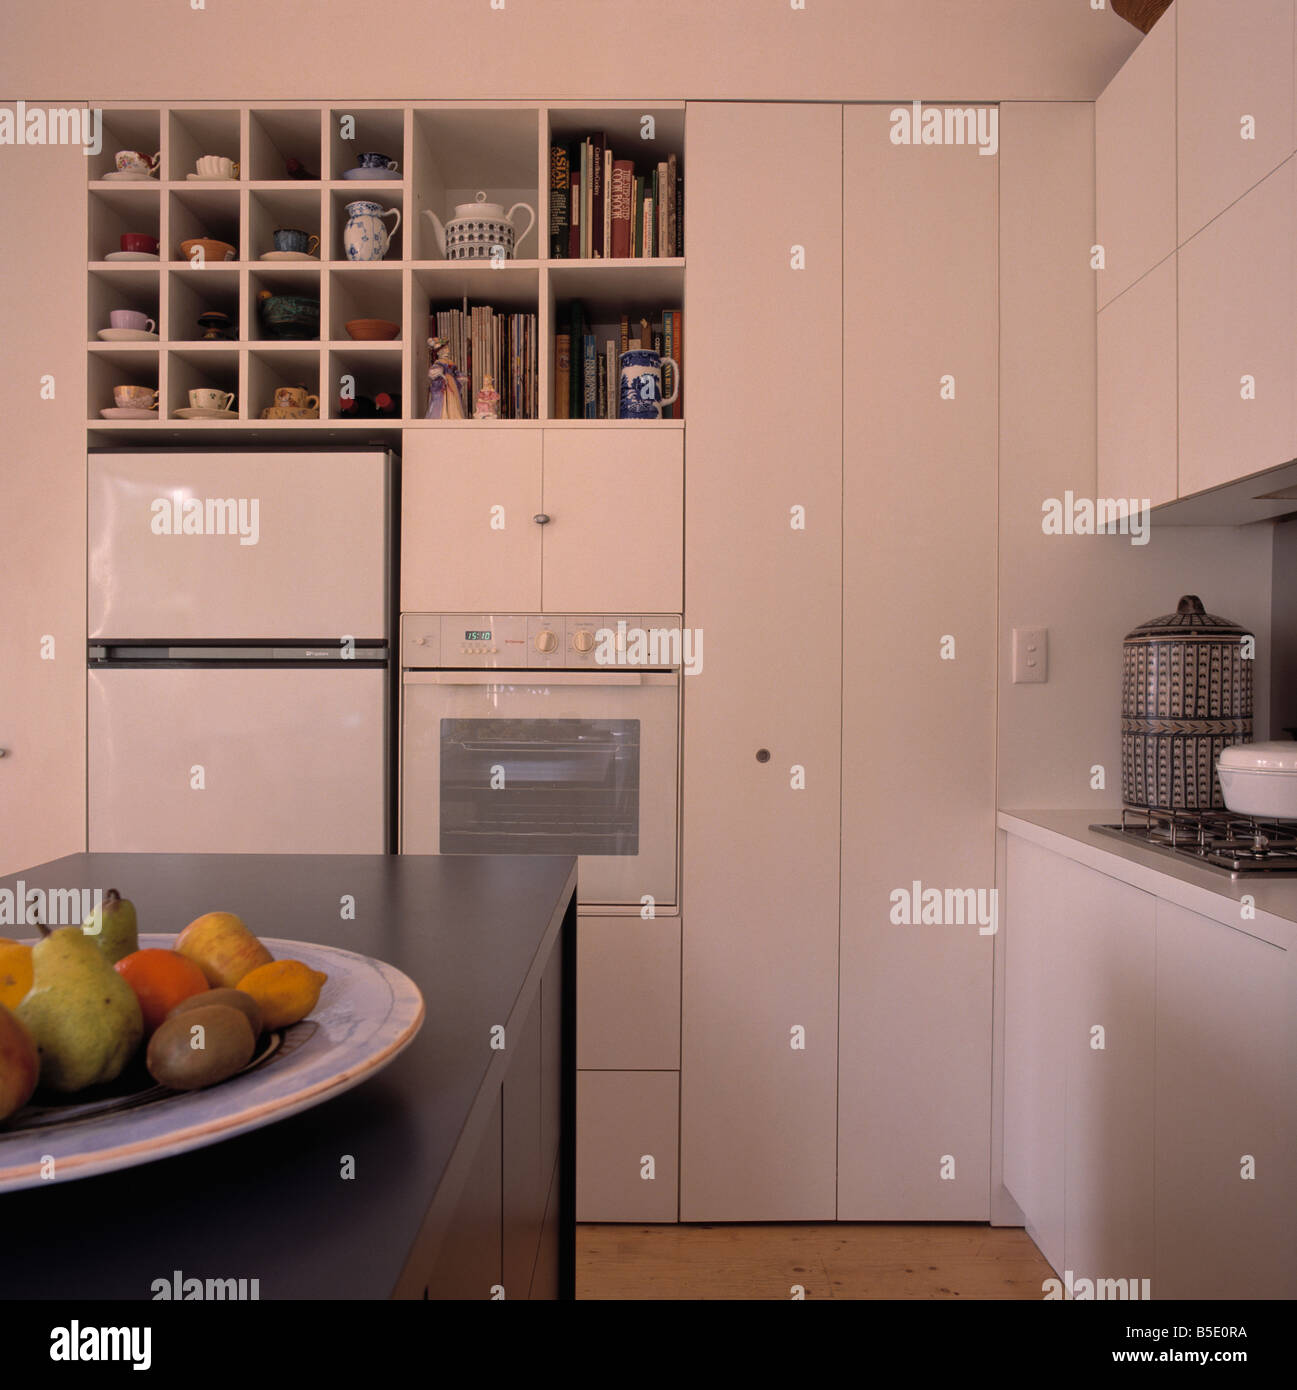 Cube shelves above fridge freezer and eye-level in modern white kitchen  with bowl of fruit on grey island unit Stock Photo - Alamy